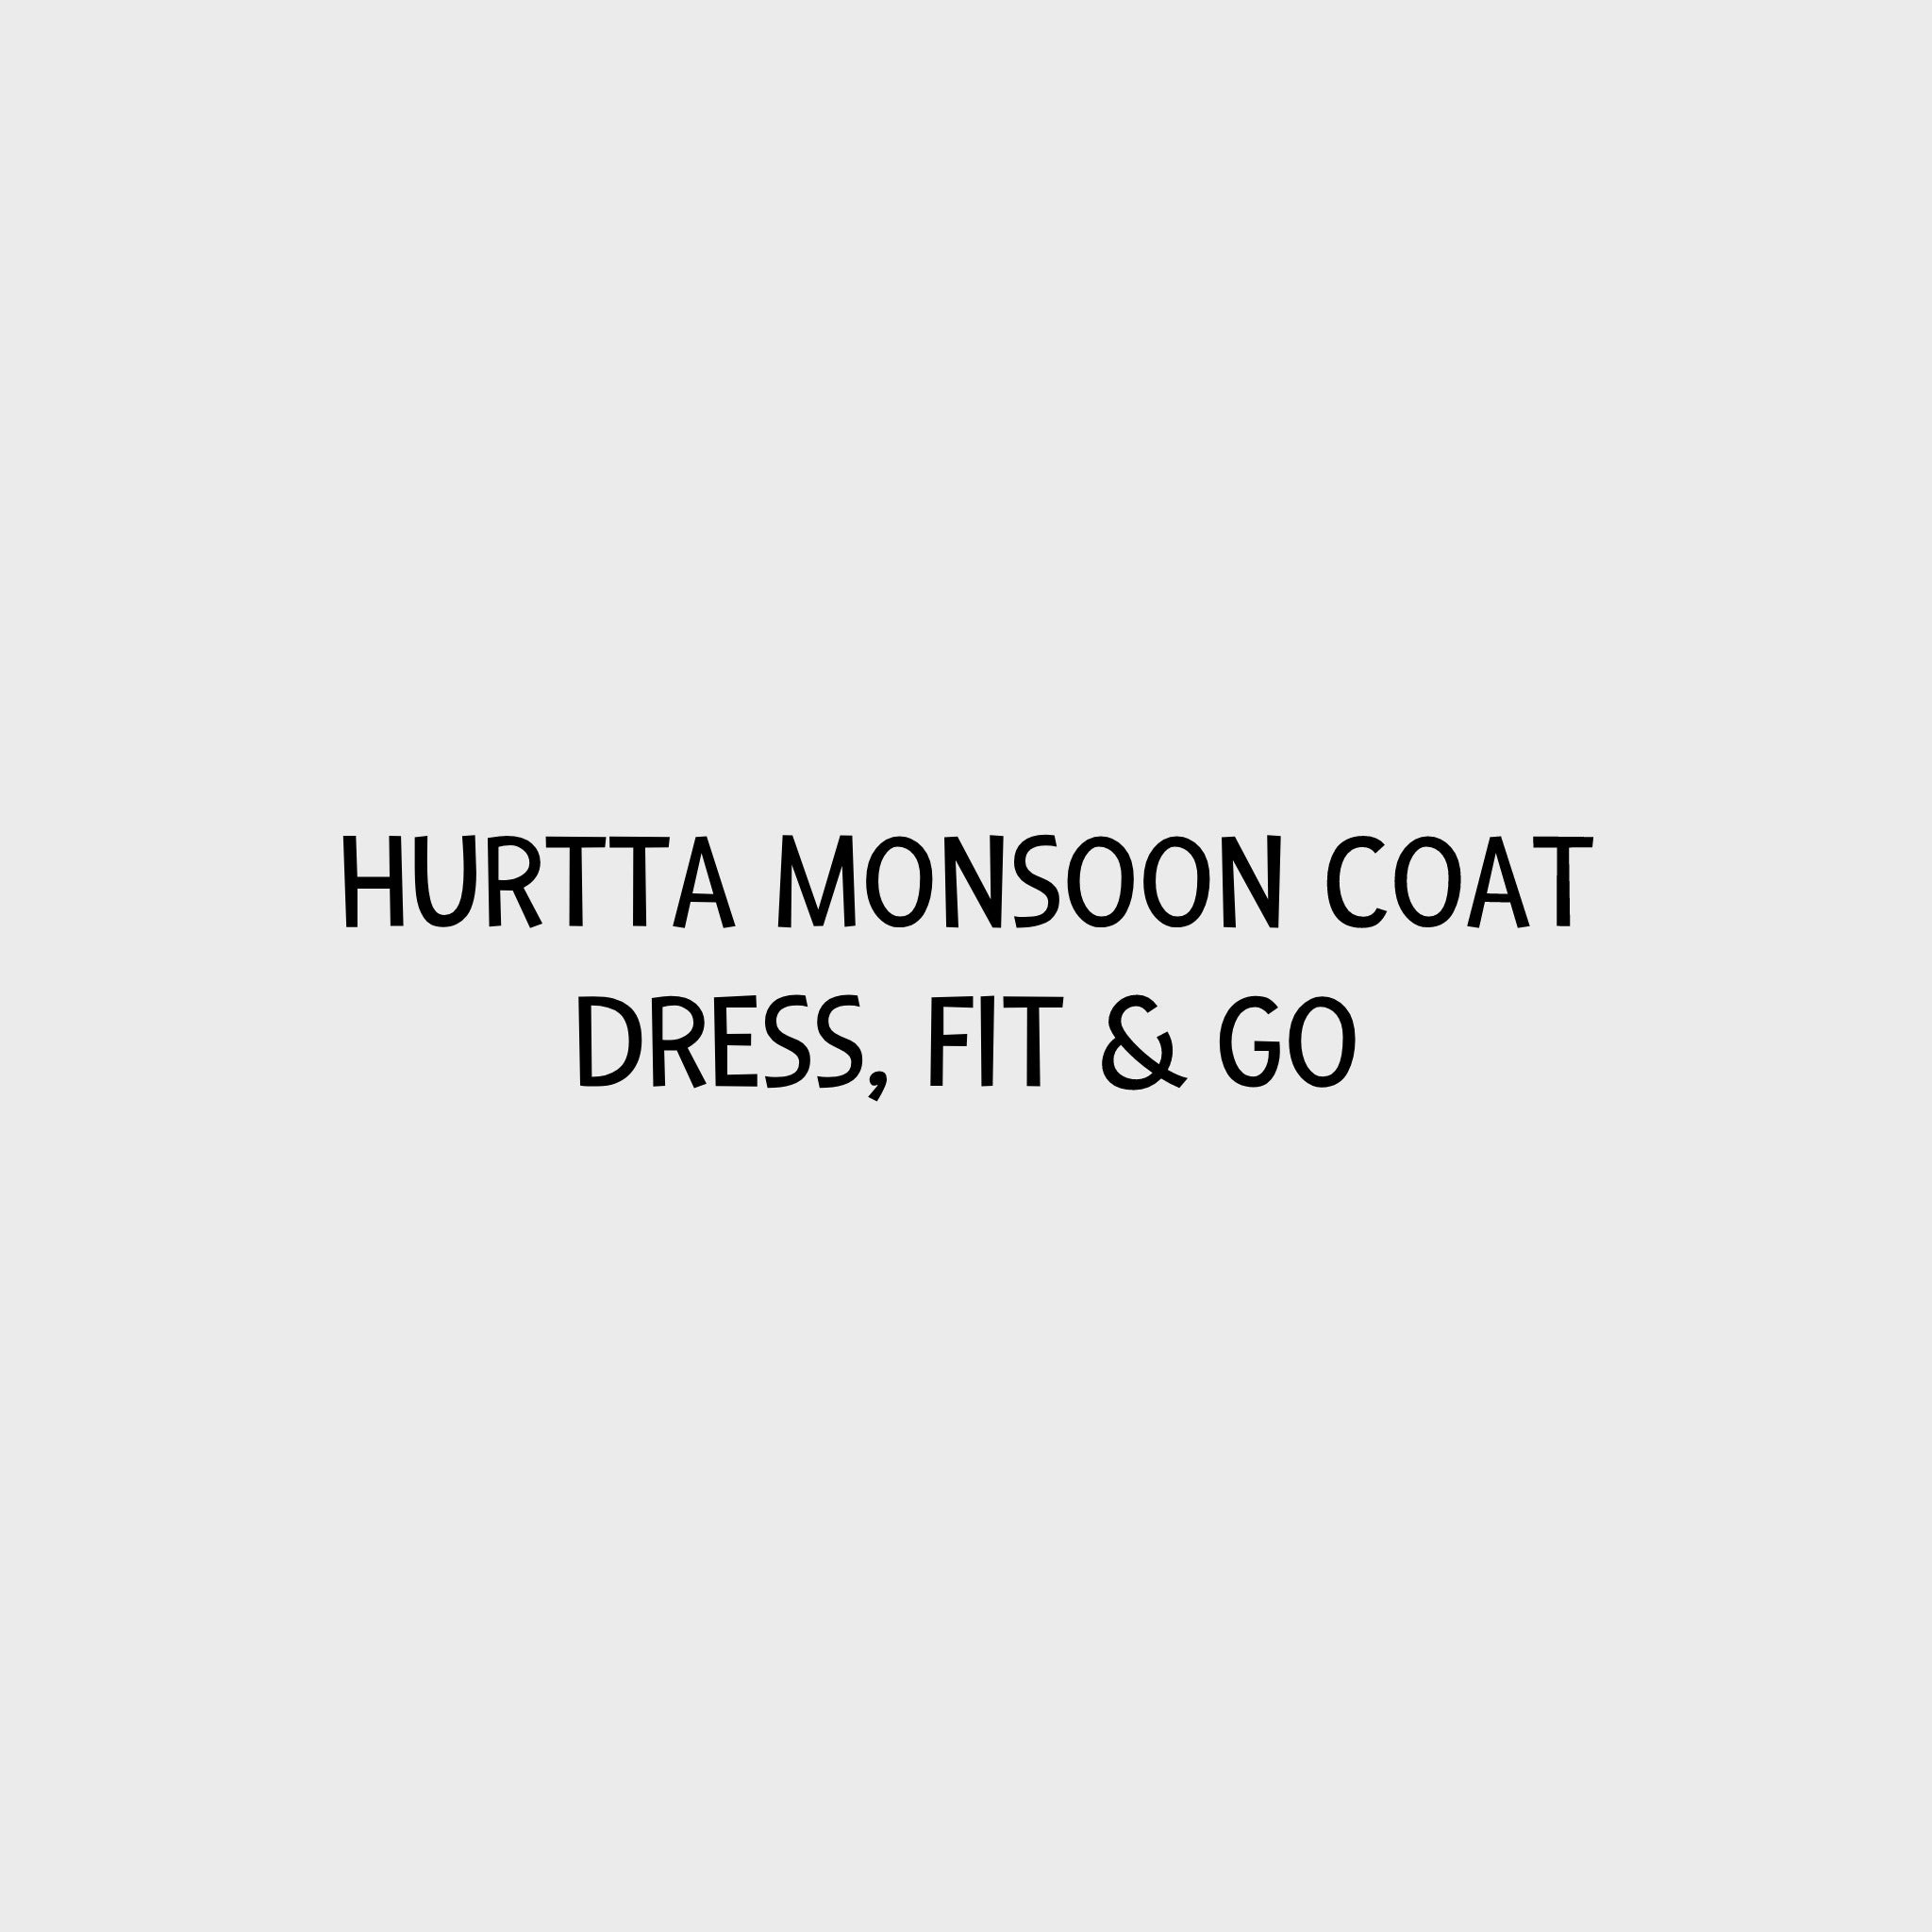 Video - Hurtta Monsoon Coat Dress, Fit &amp; Go